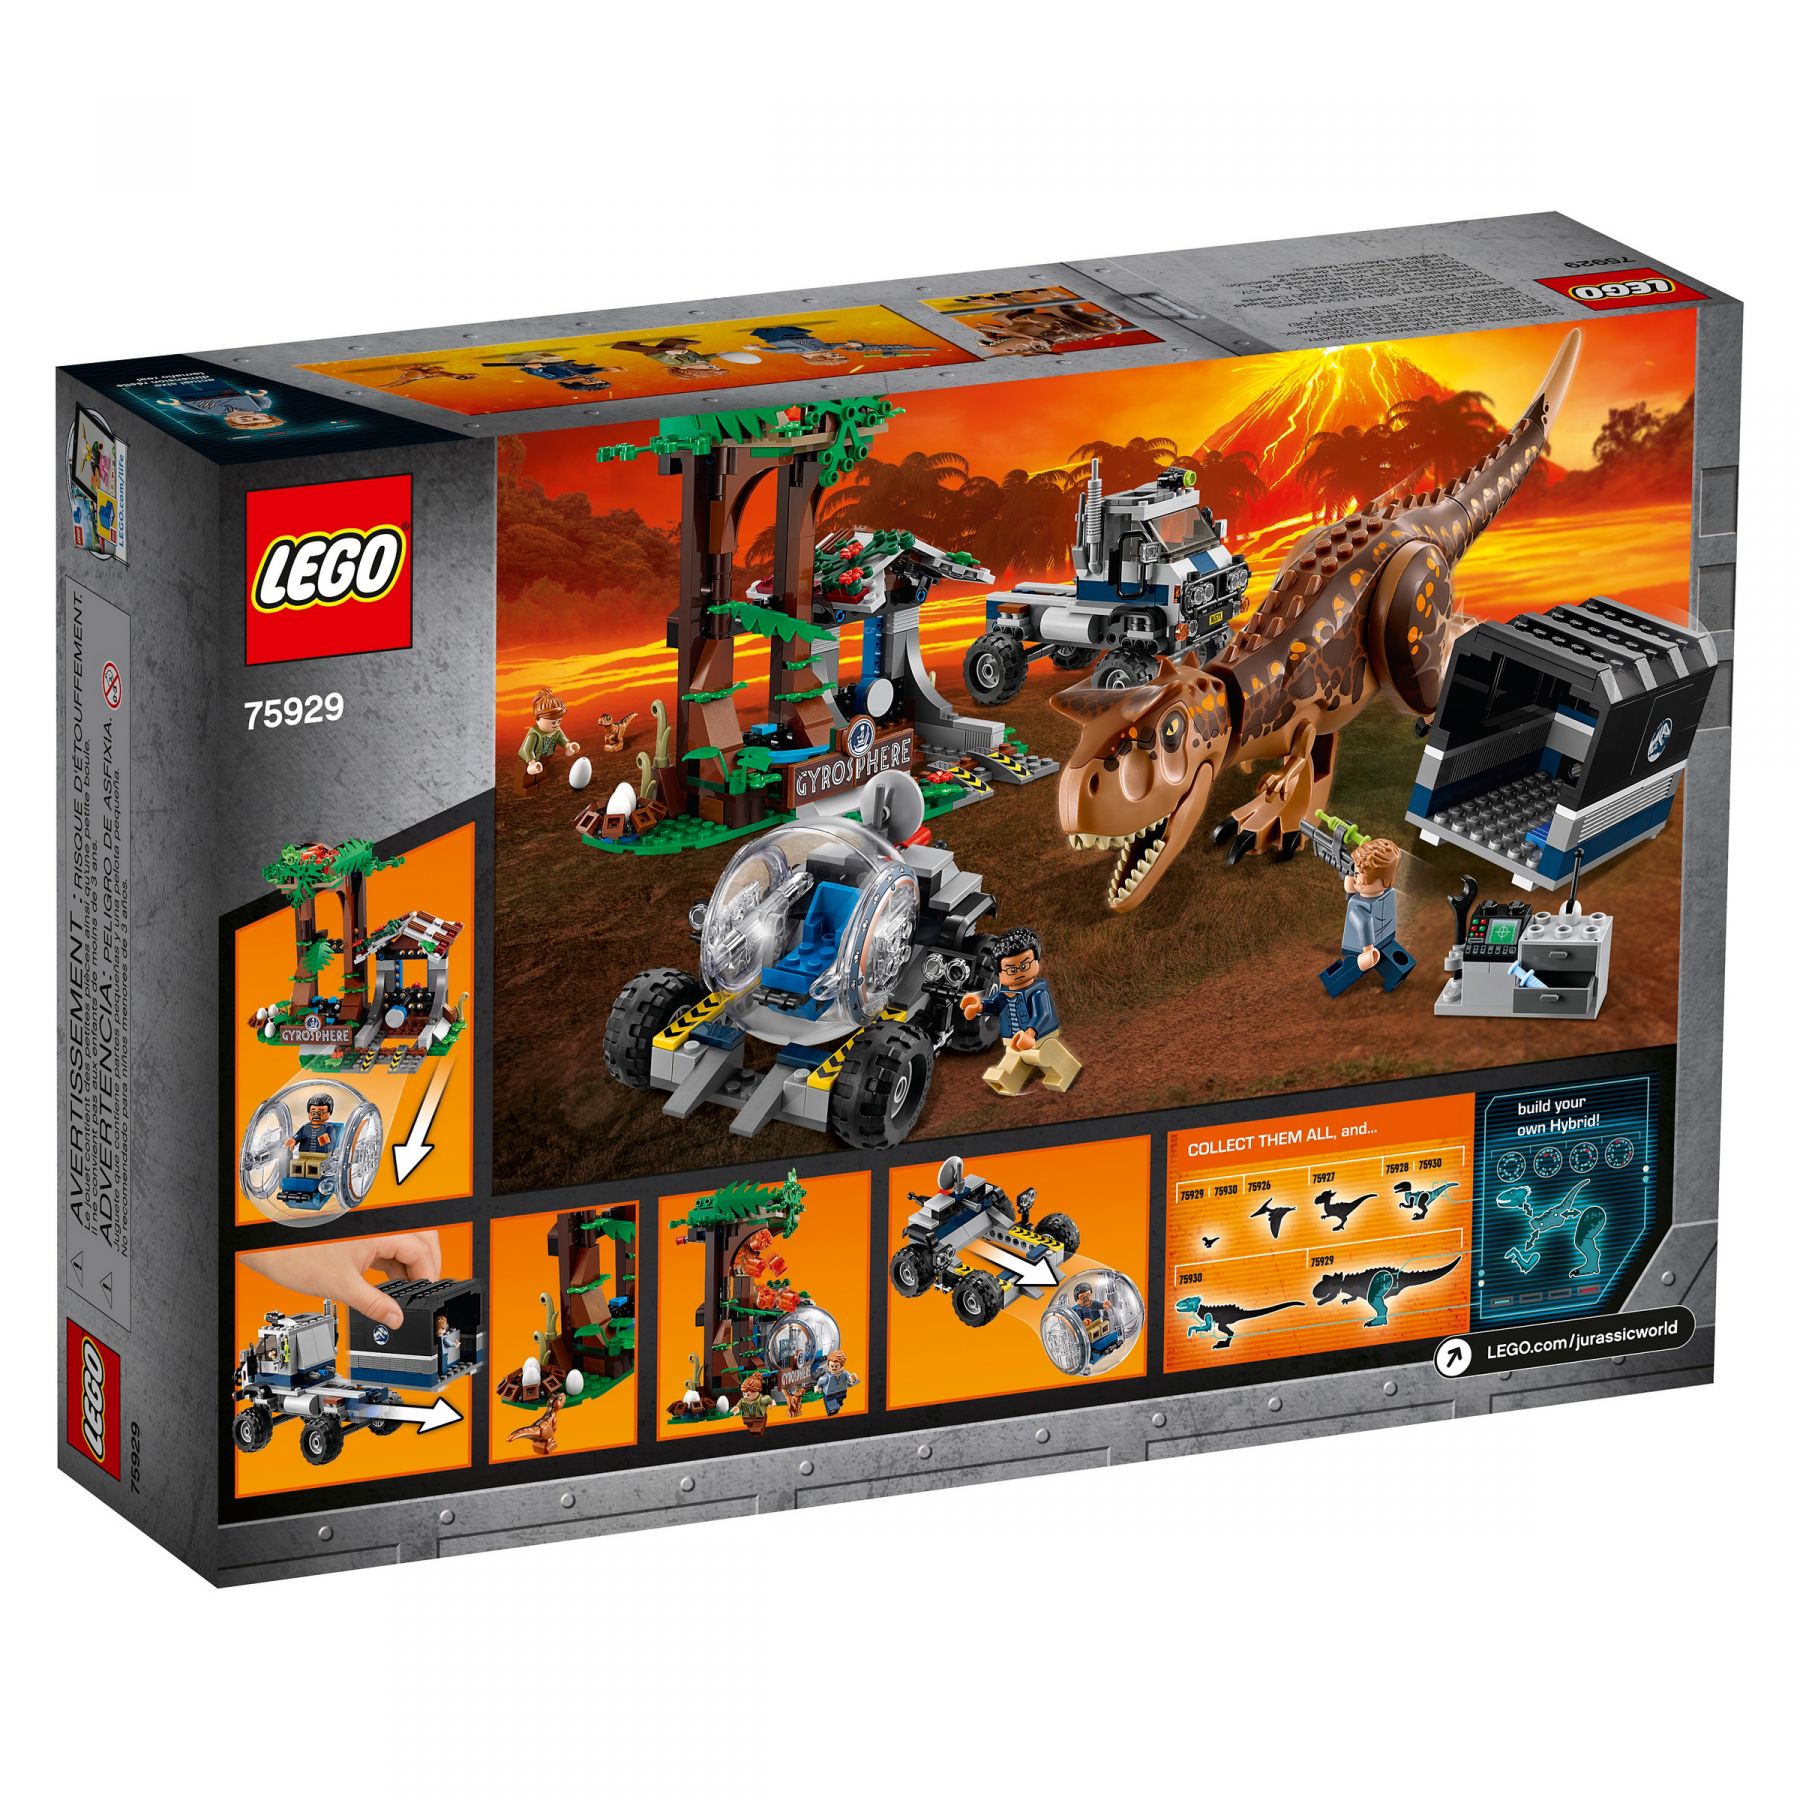 LEGO Jurassic World 75929 Carnotaurus - Flucht in der Gyrosphere LEGO_75929_alt4.jpg